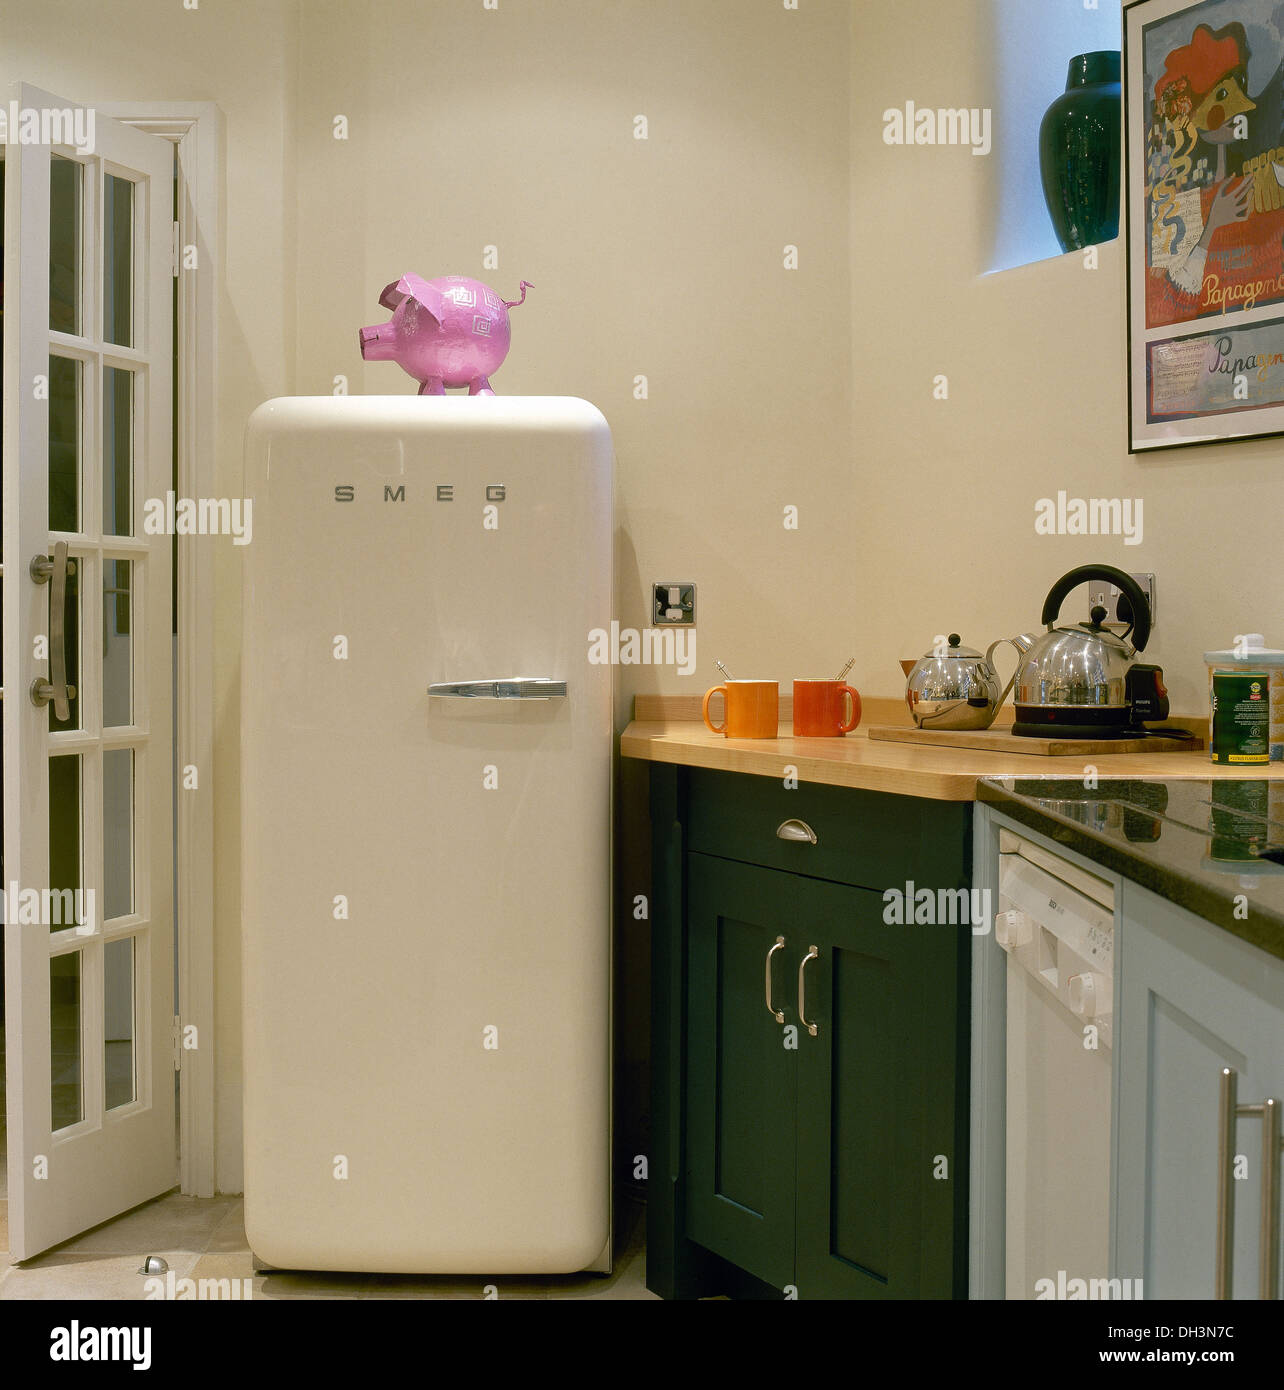 Un frigo Smeg pour donner du style à votre cuisine